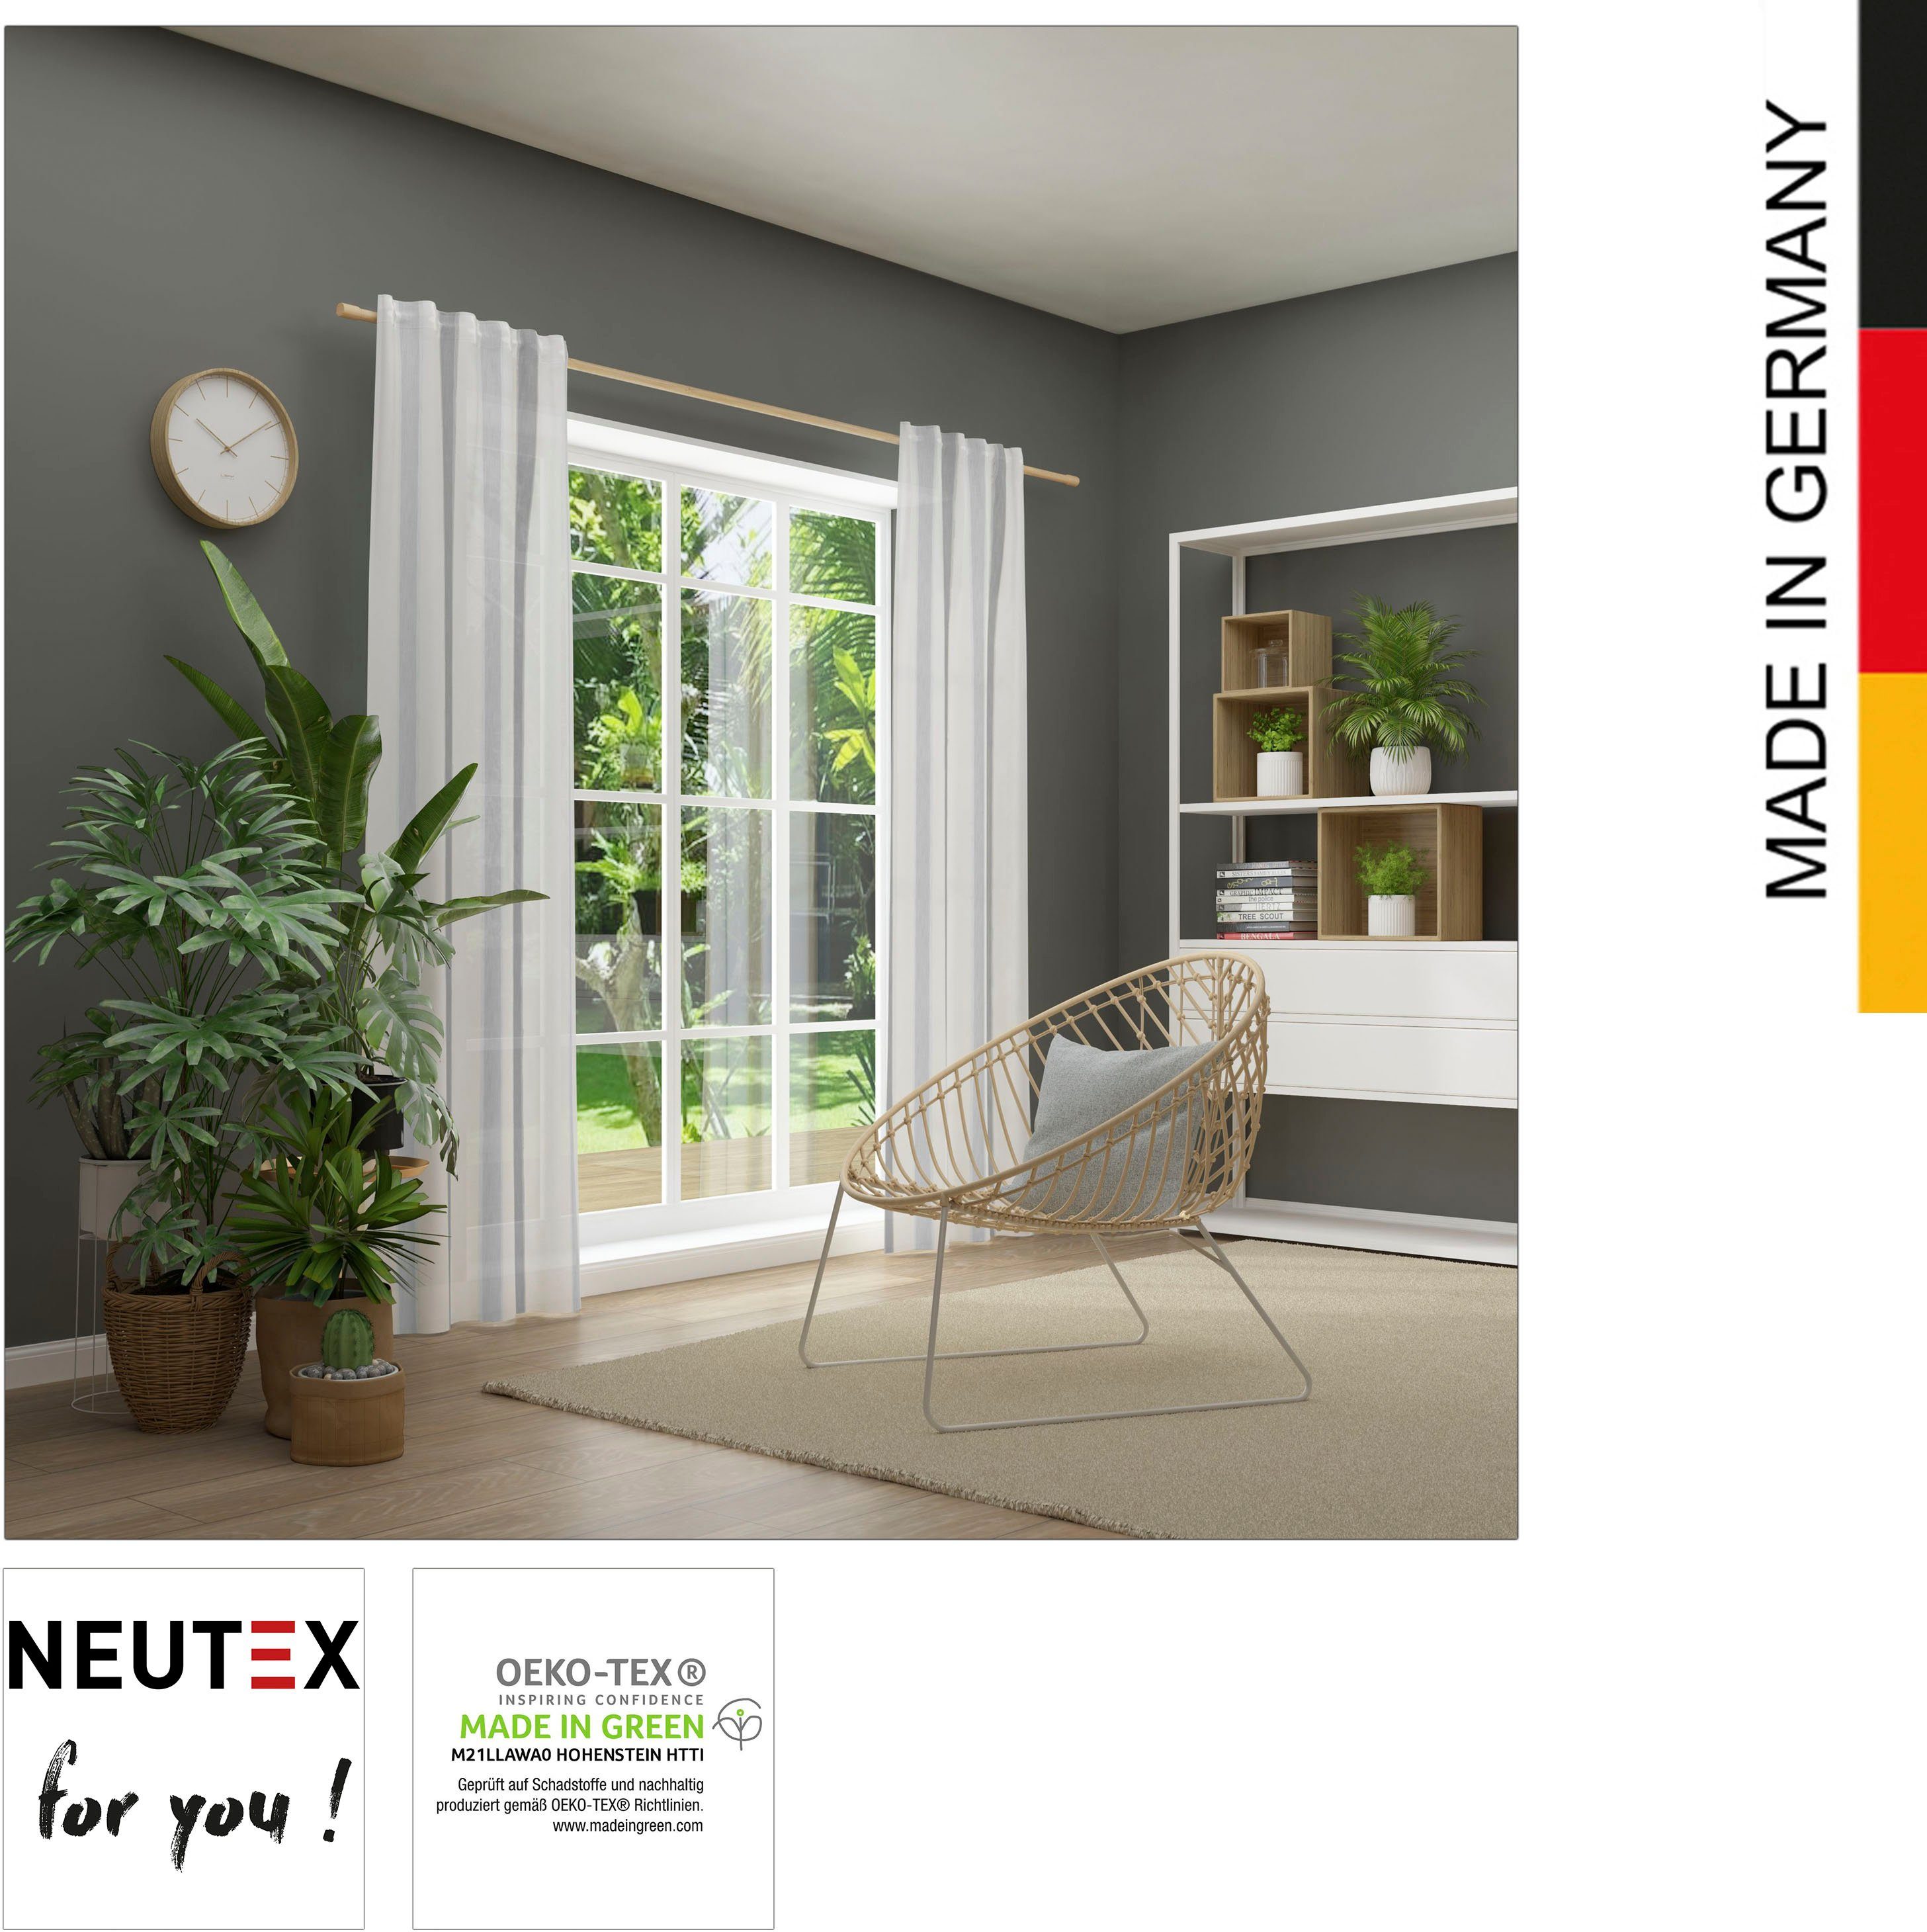 St), Multifunktionsband you!, for grau halbtransparent, Neutex weiß (1 Vorhang eleganter Längsstreifen Bandolo, silberfarben